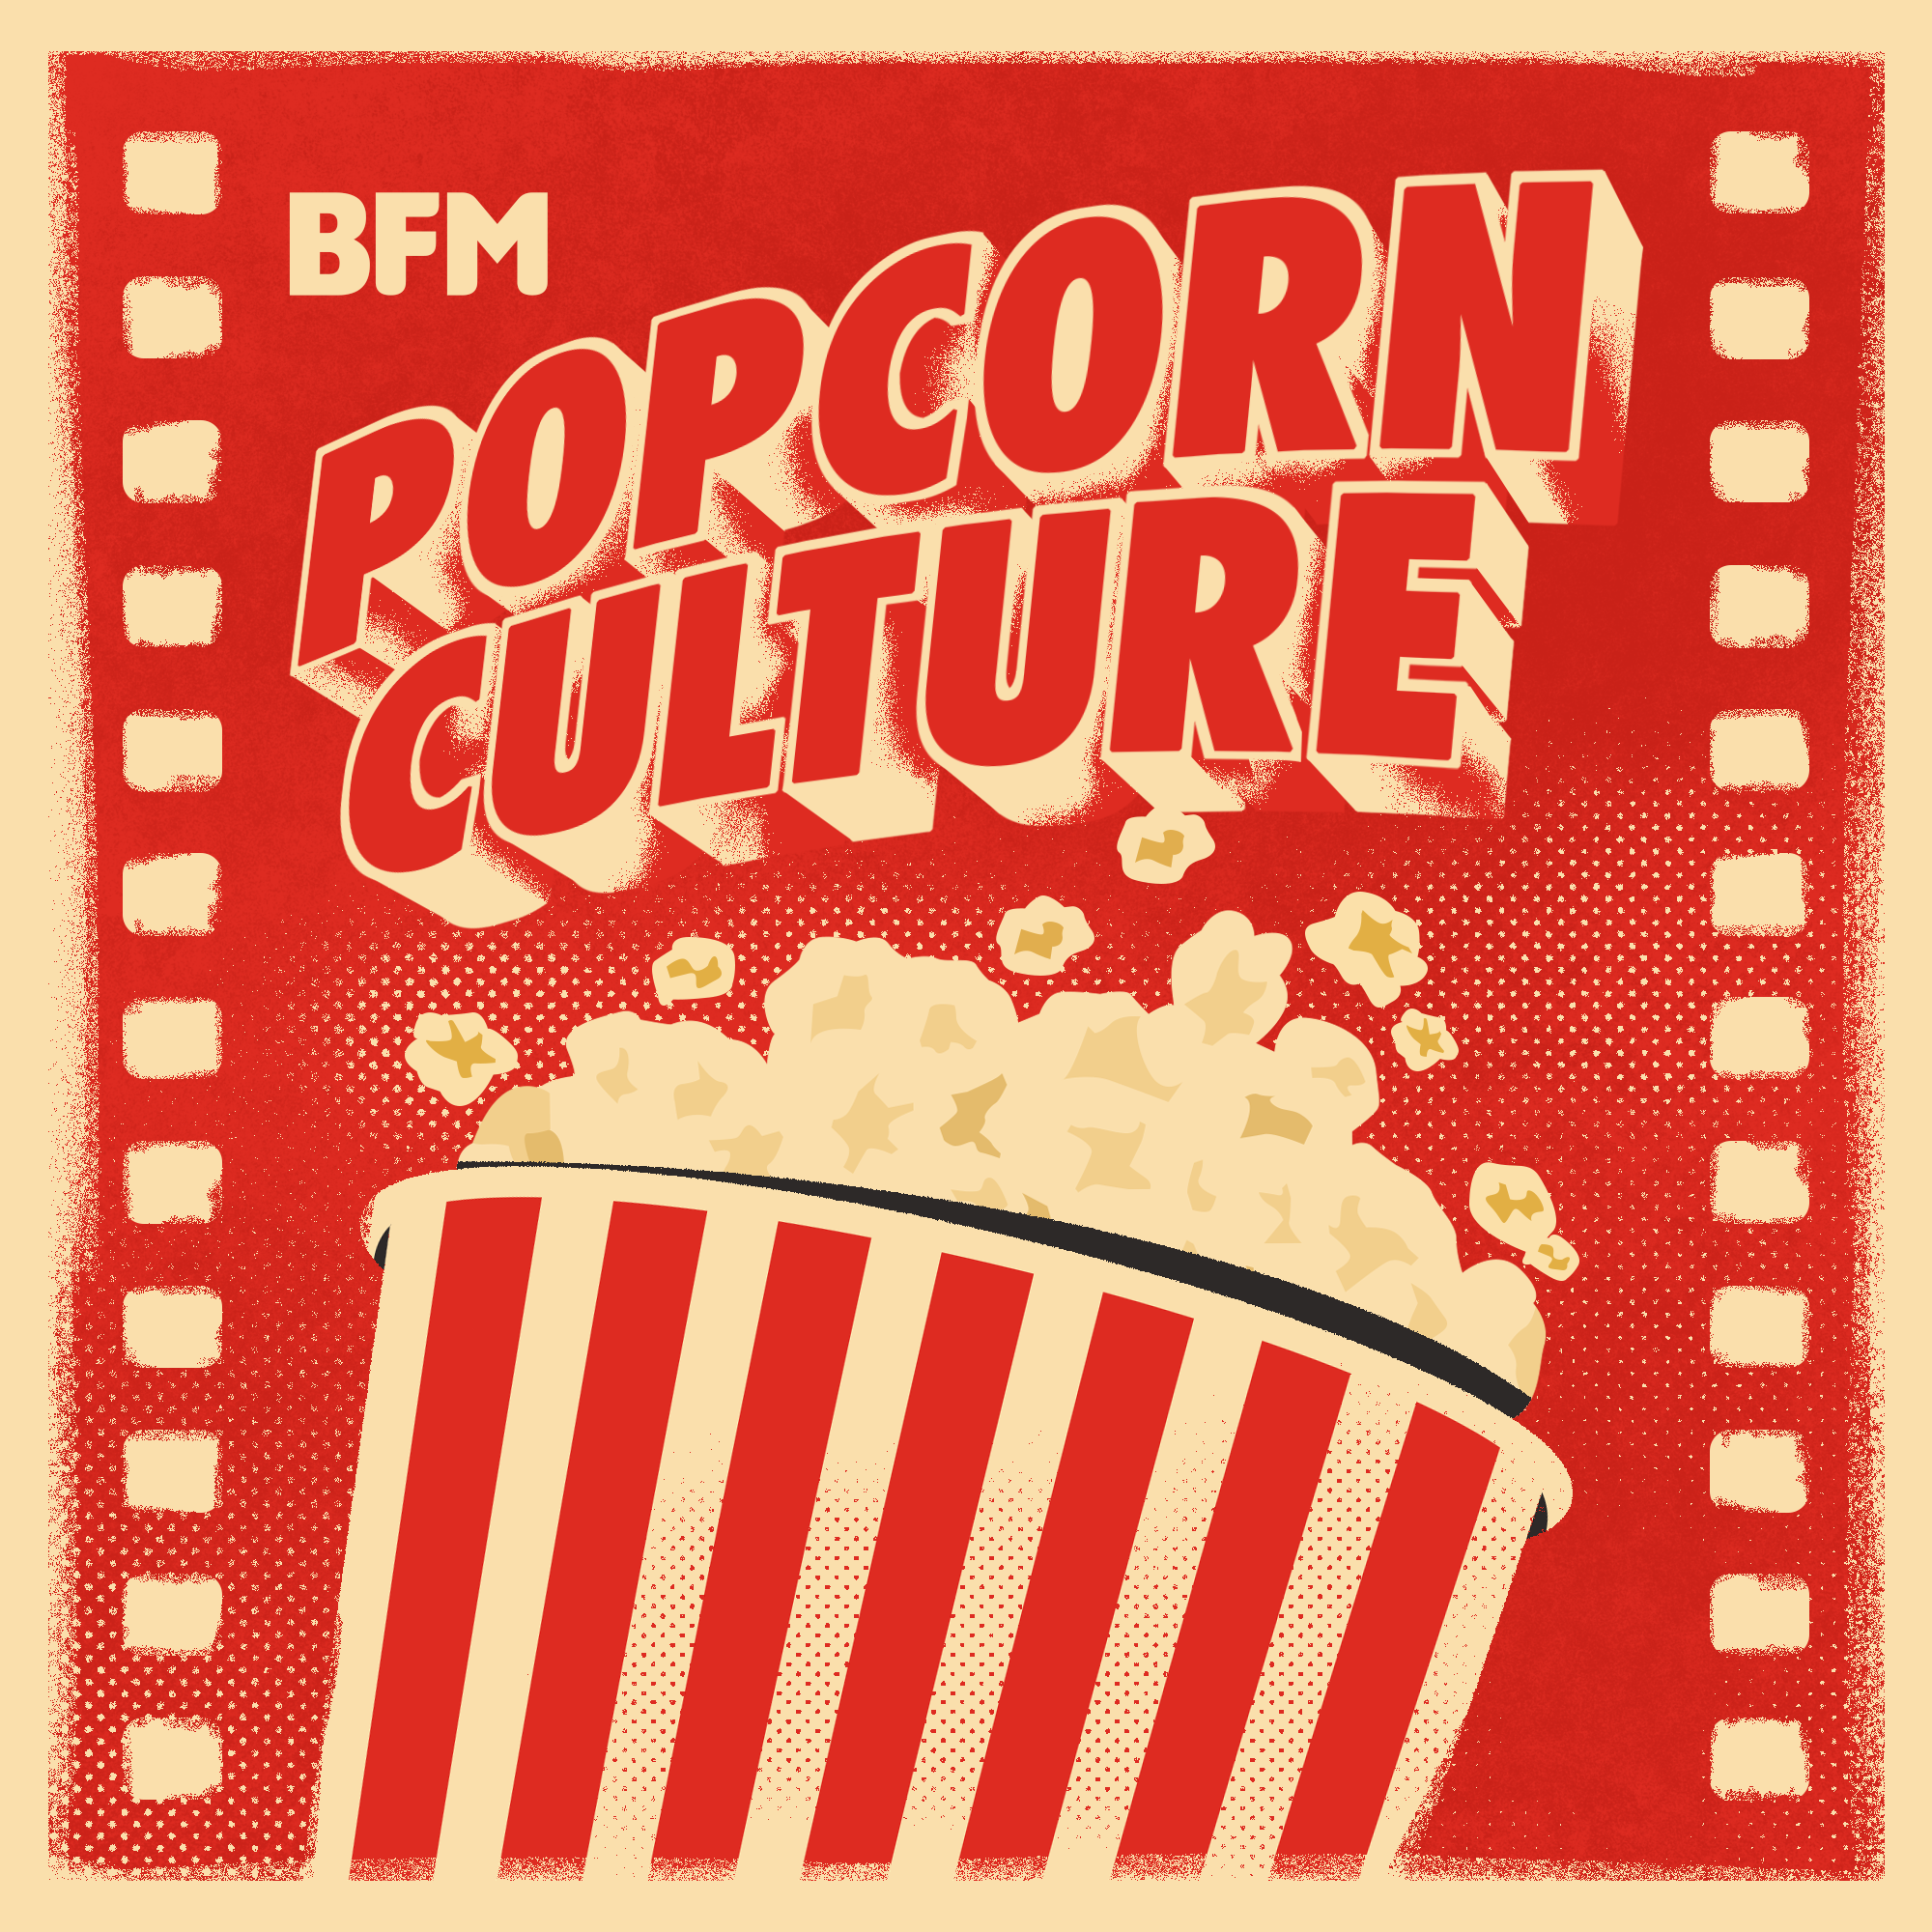 Popcorn Culture - Supercut: A Matter of (Acting)